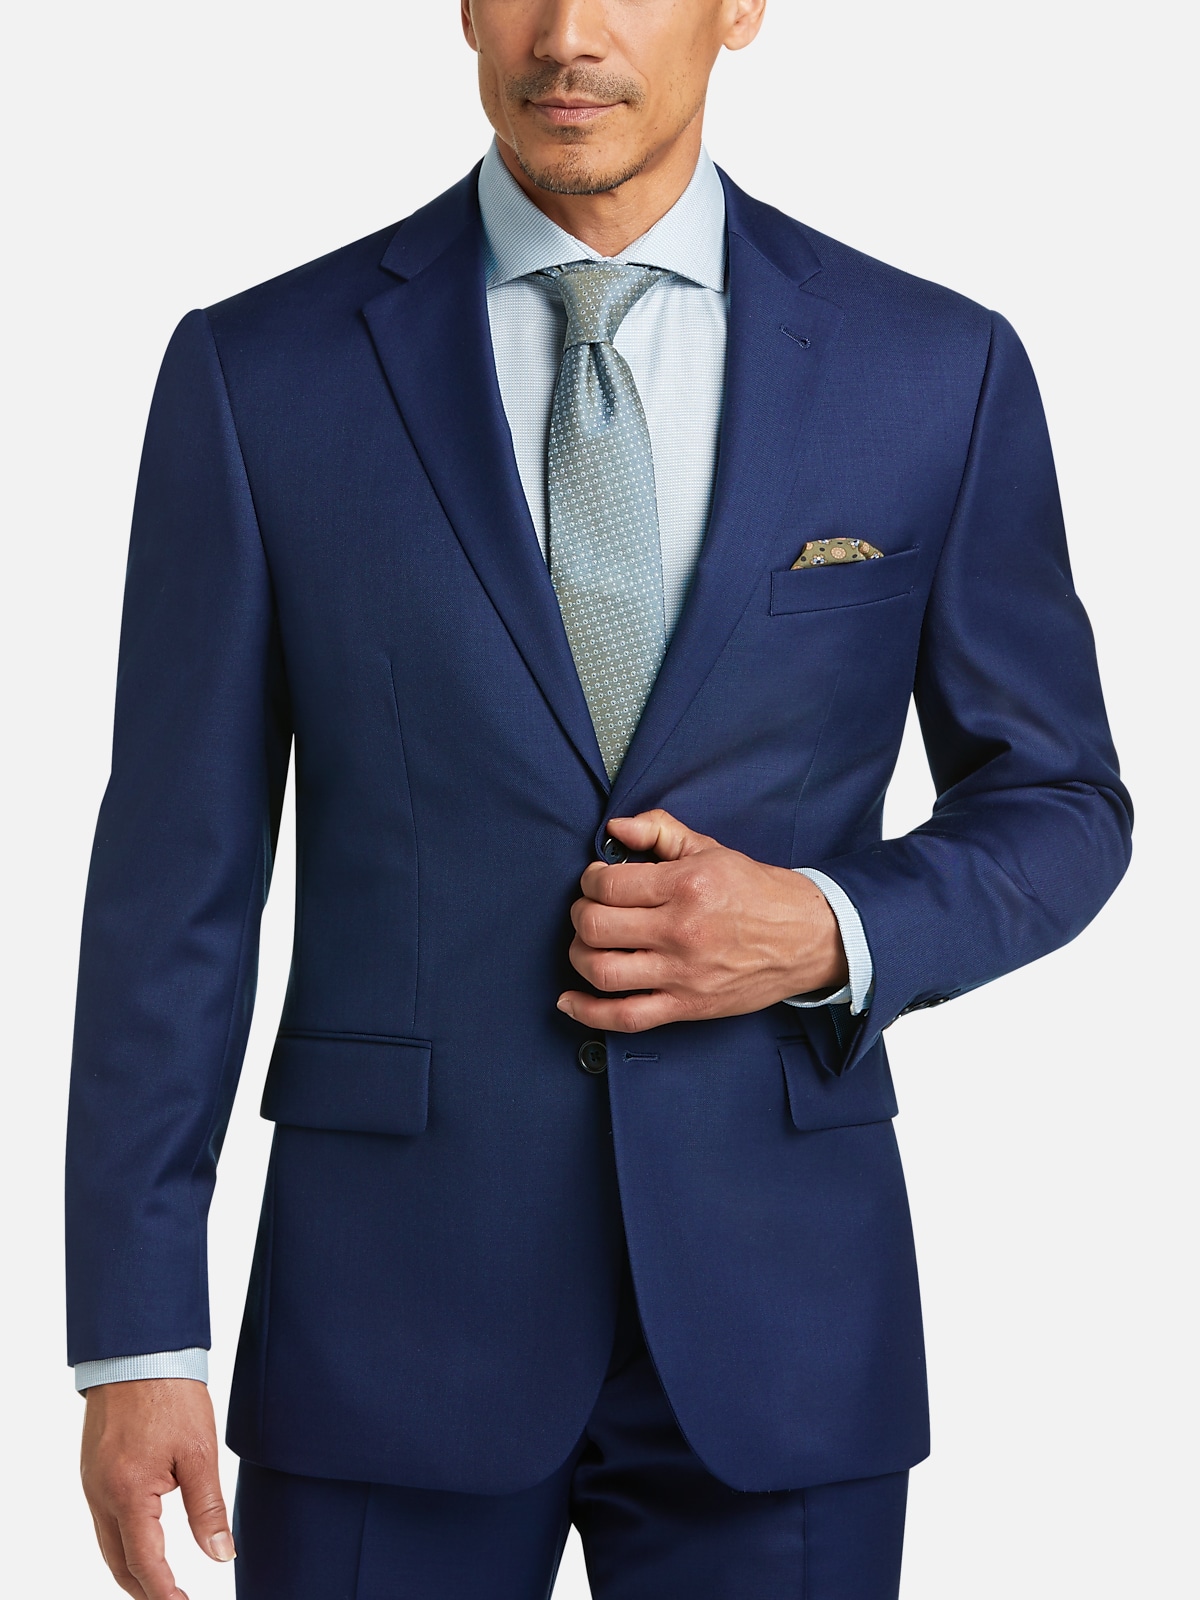 JOE Joseph Abboud Bright Classic Fit Suit | All Clearance $39.99| Men's ...